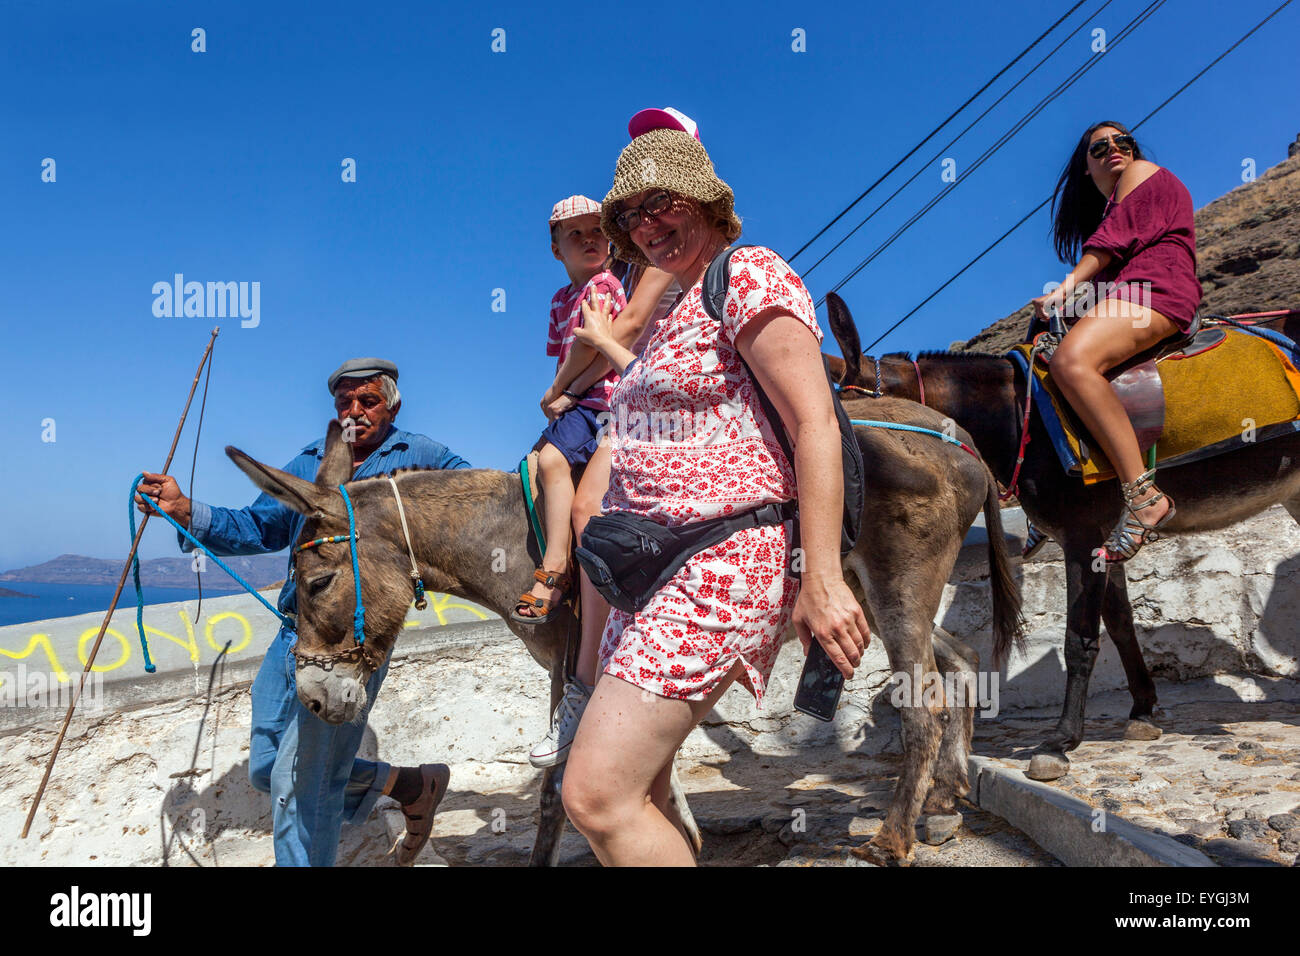 Asini Santorini che trasportano i turisti sulla strada che collega il porto alla città di Fira Santorini, l'isola greca, Cicladi, Grecia Foto Stock